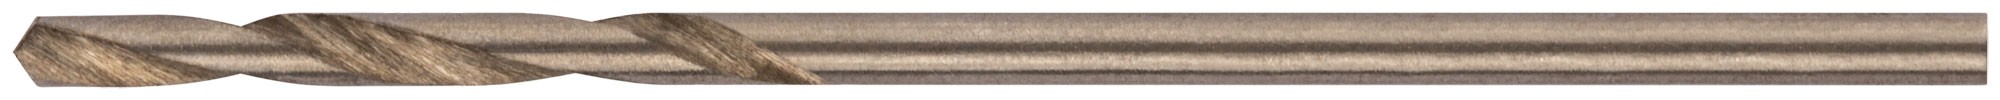 Сверла по металлу HSS полированные 1,5 мм (10 шт.)